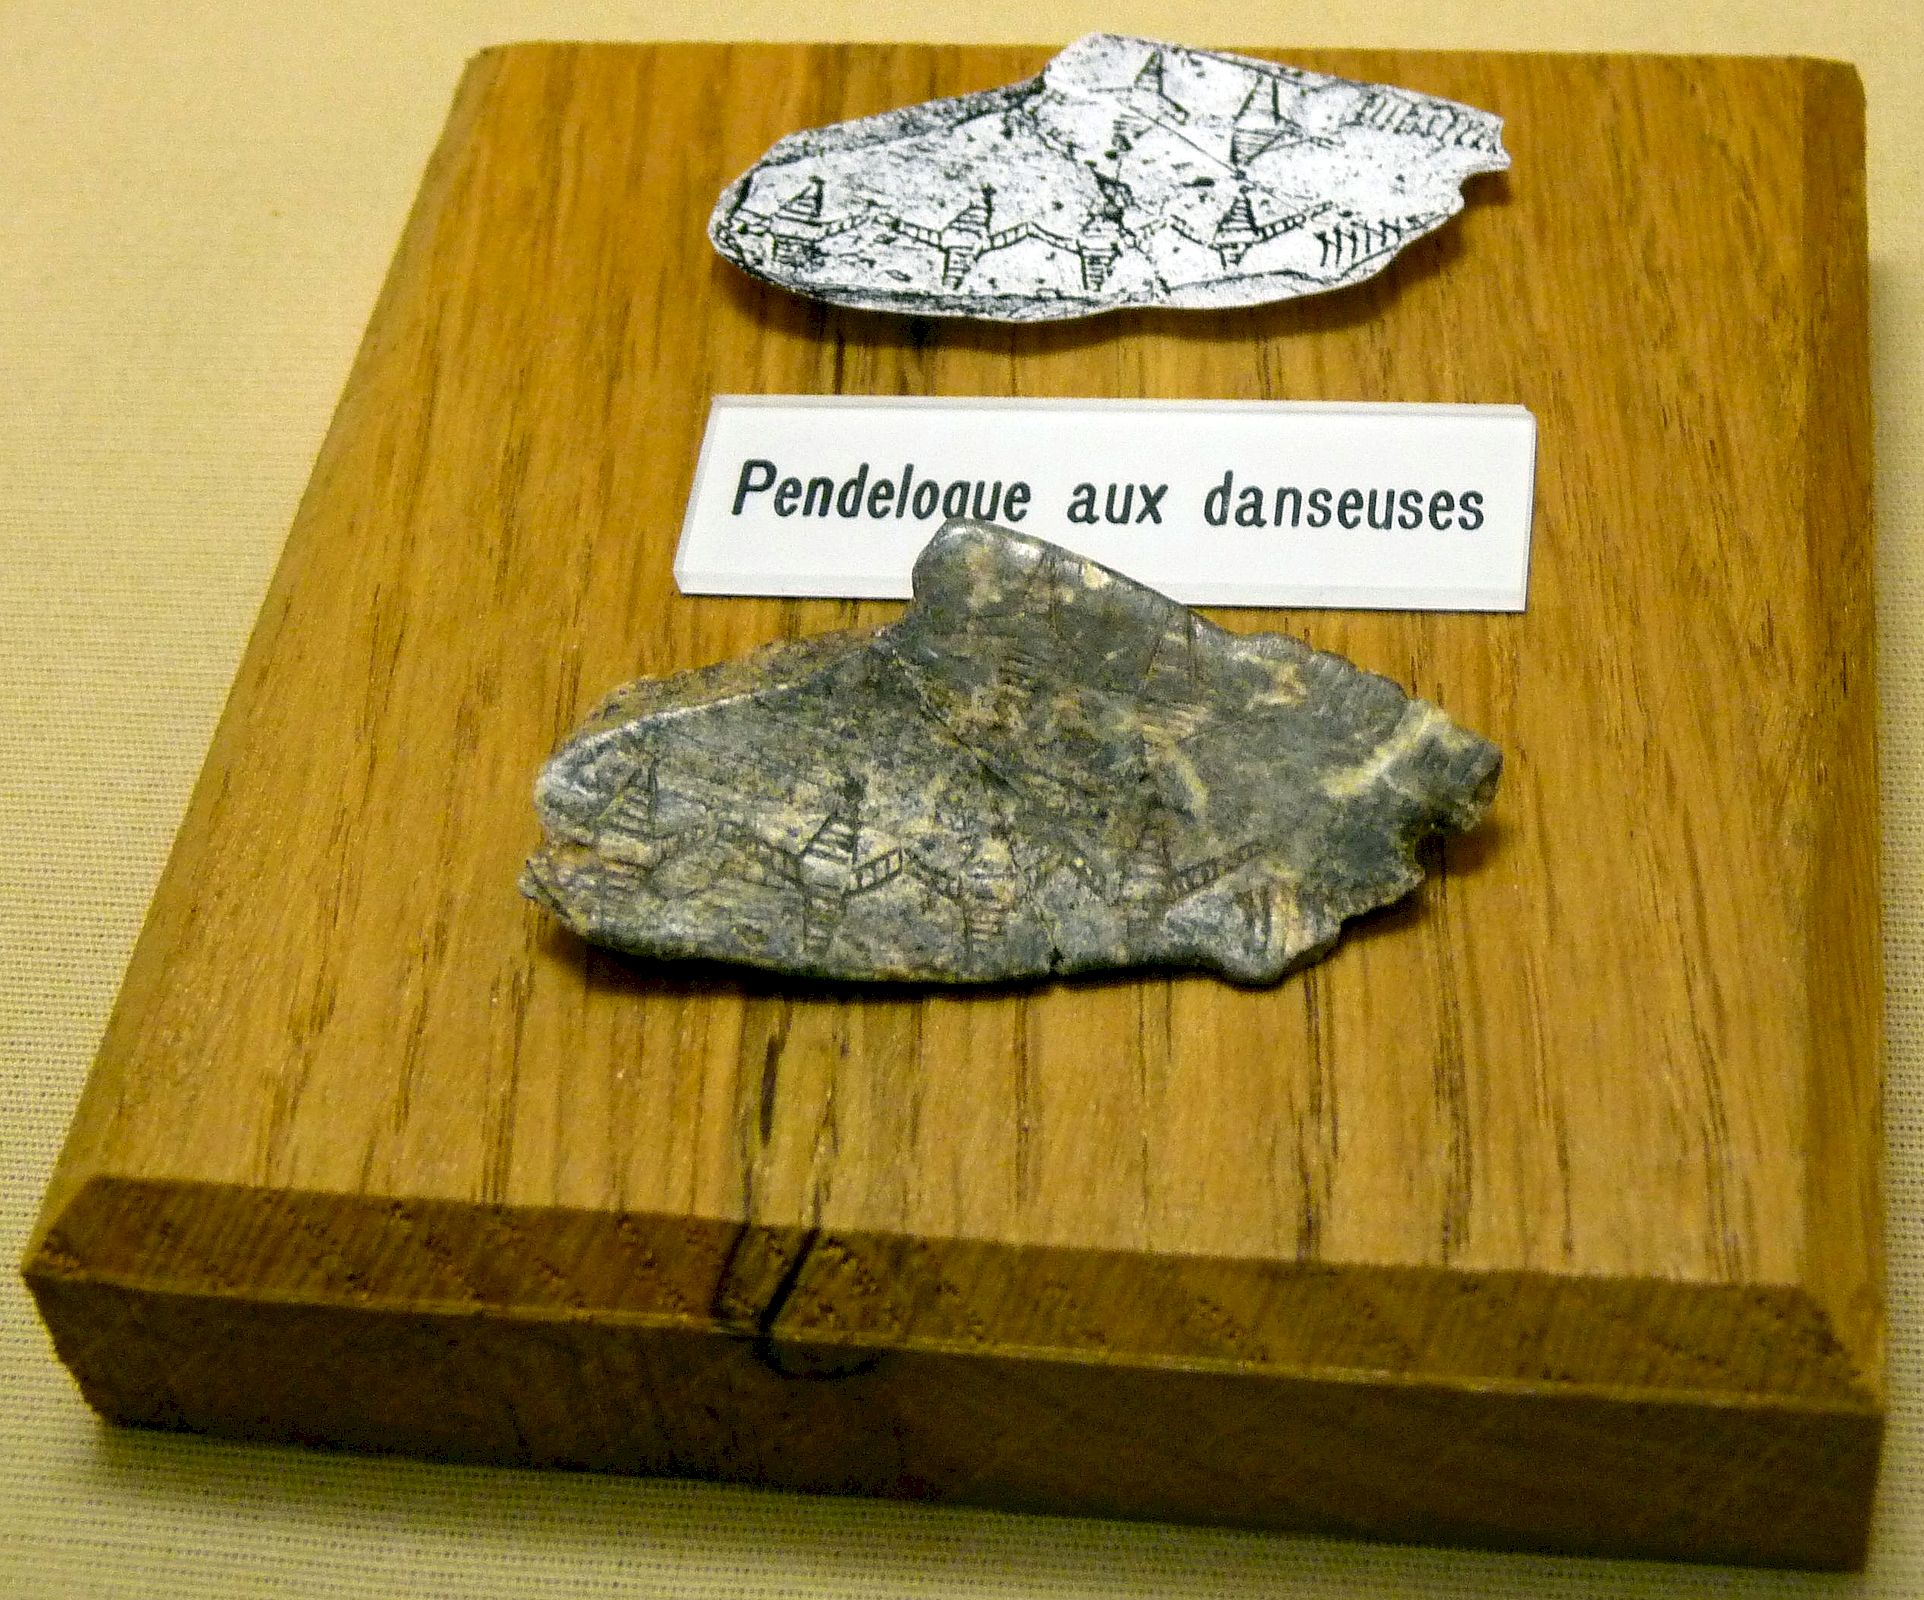 Pendeloque aux danseuses, Abri Blanchard, conservée au Musée Argentomagus, cliché Jean-François Martine